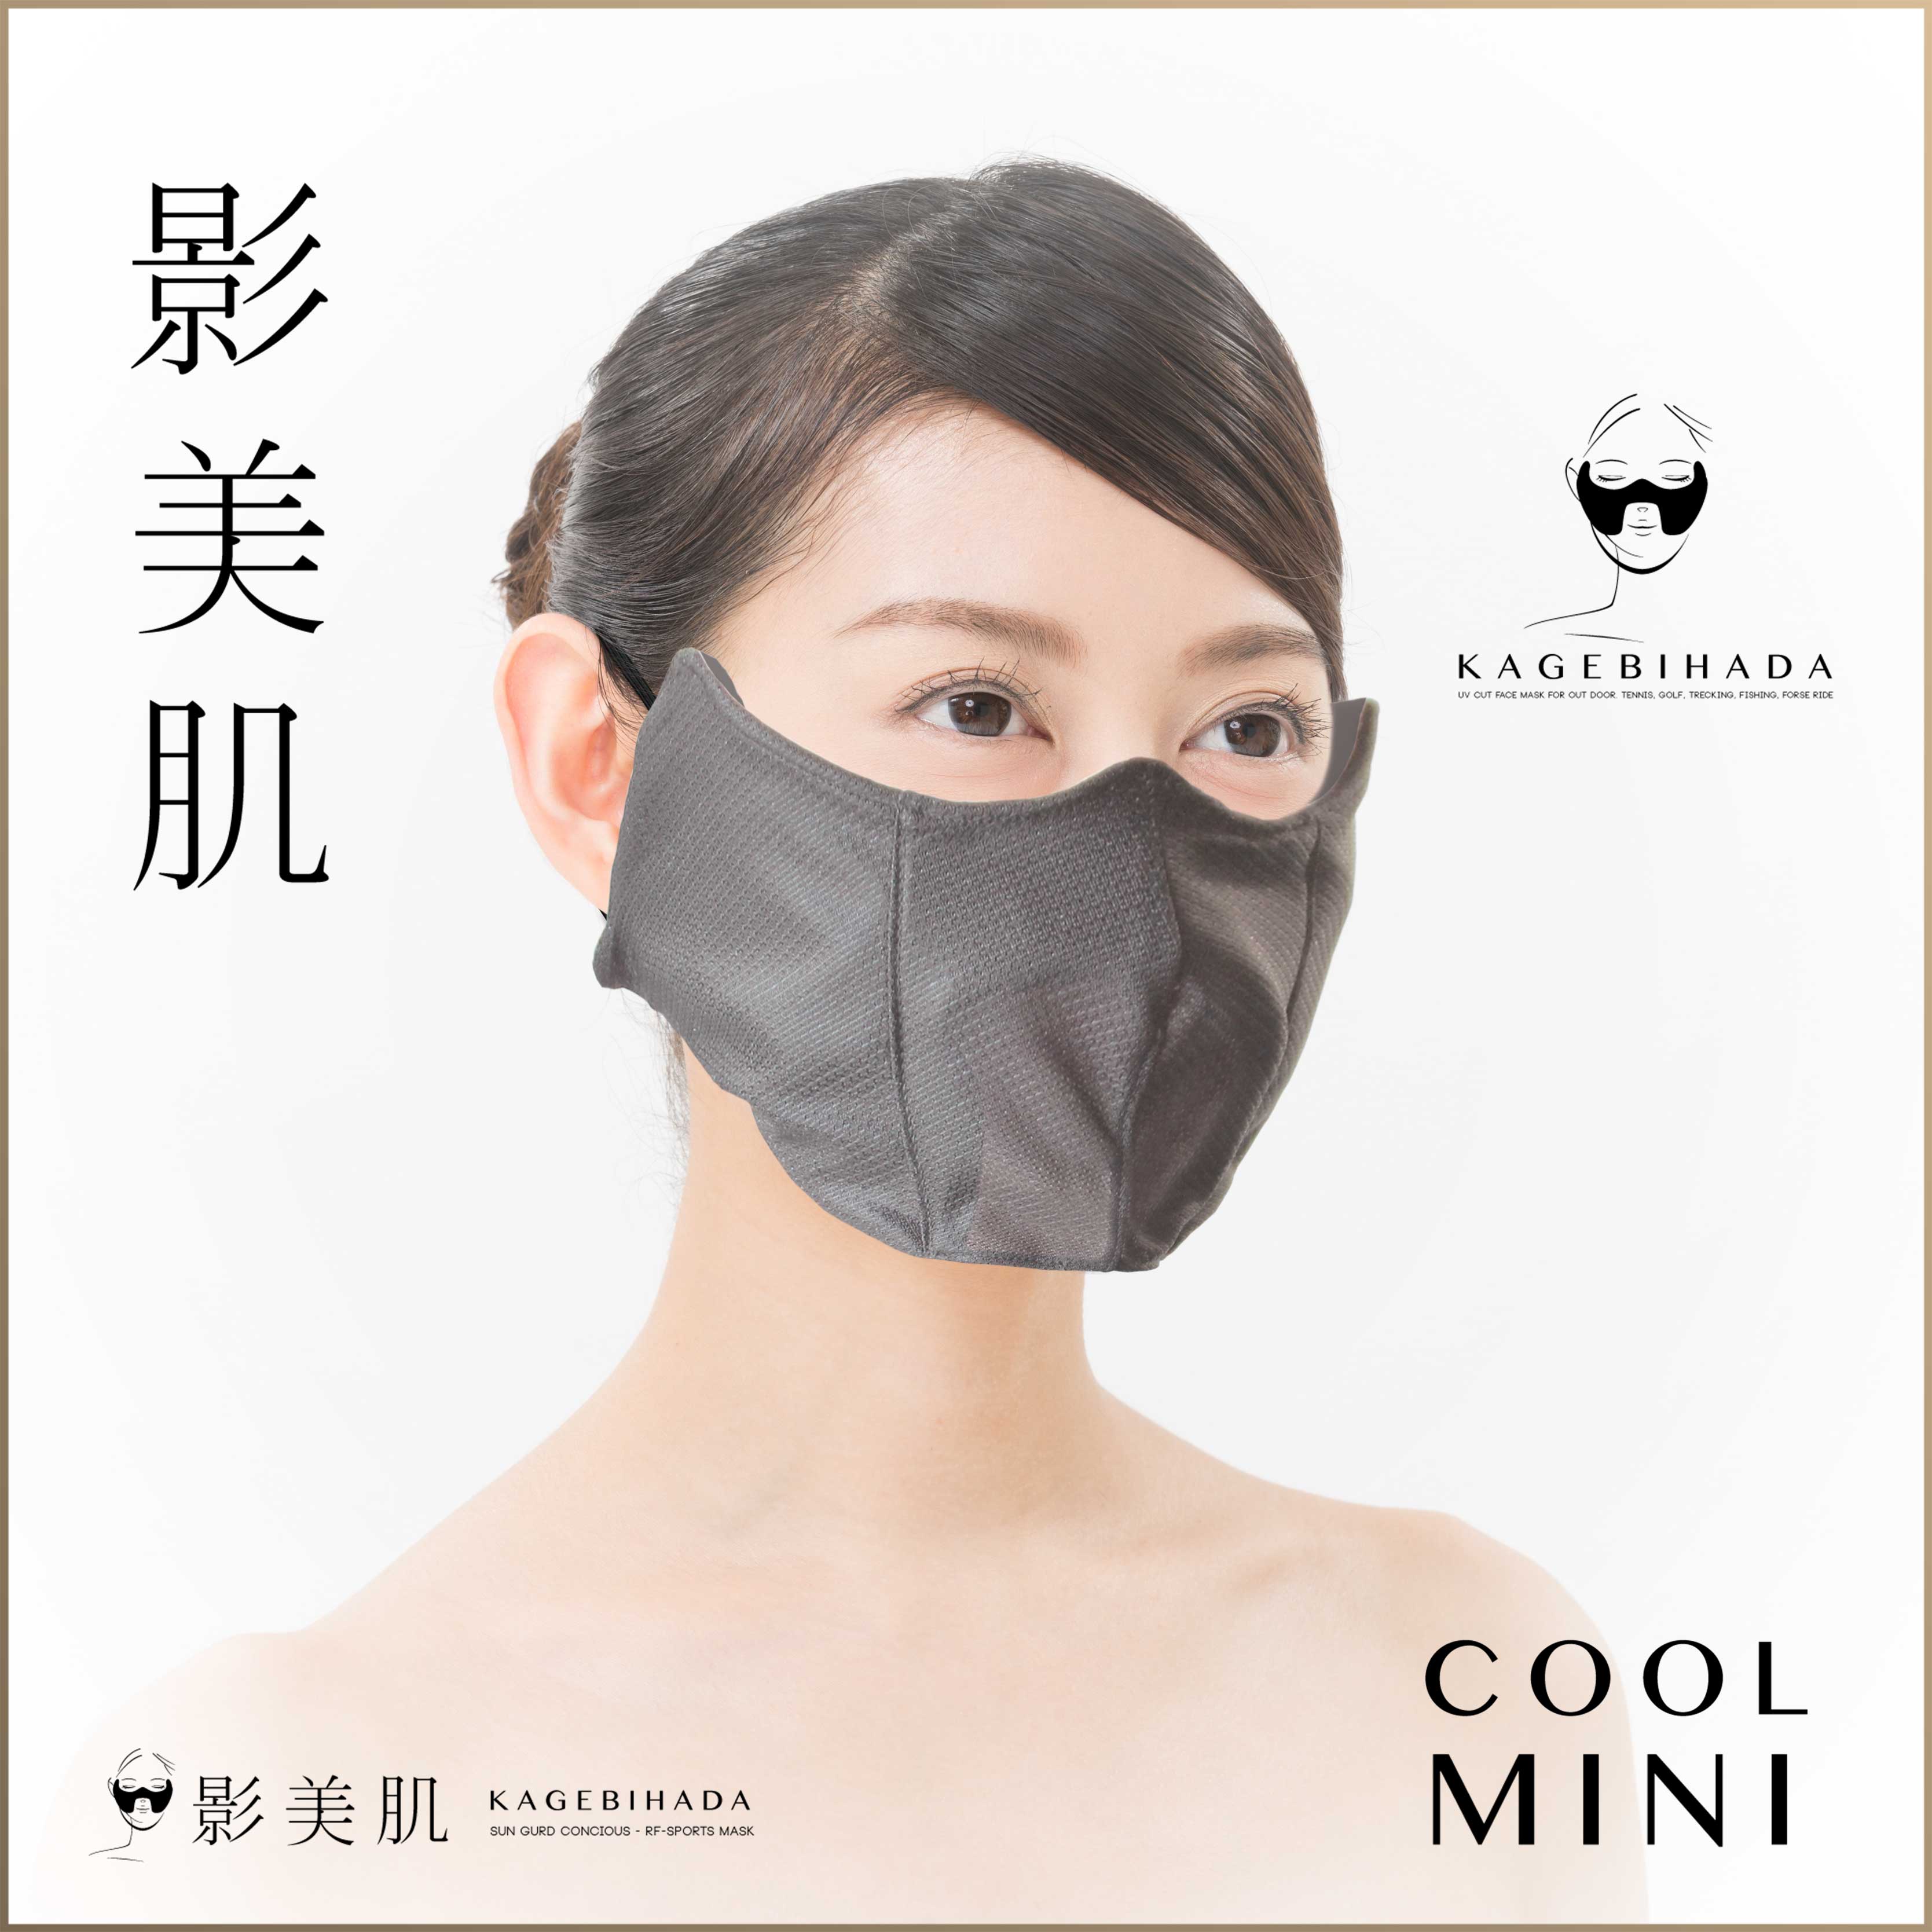 影美肌 プレミアムUVカットマスク 影美肌公式販売サイト / 影美肌-KAGEBIHADA クール ミニ サックス